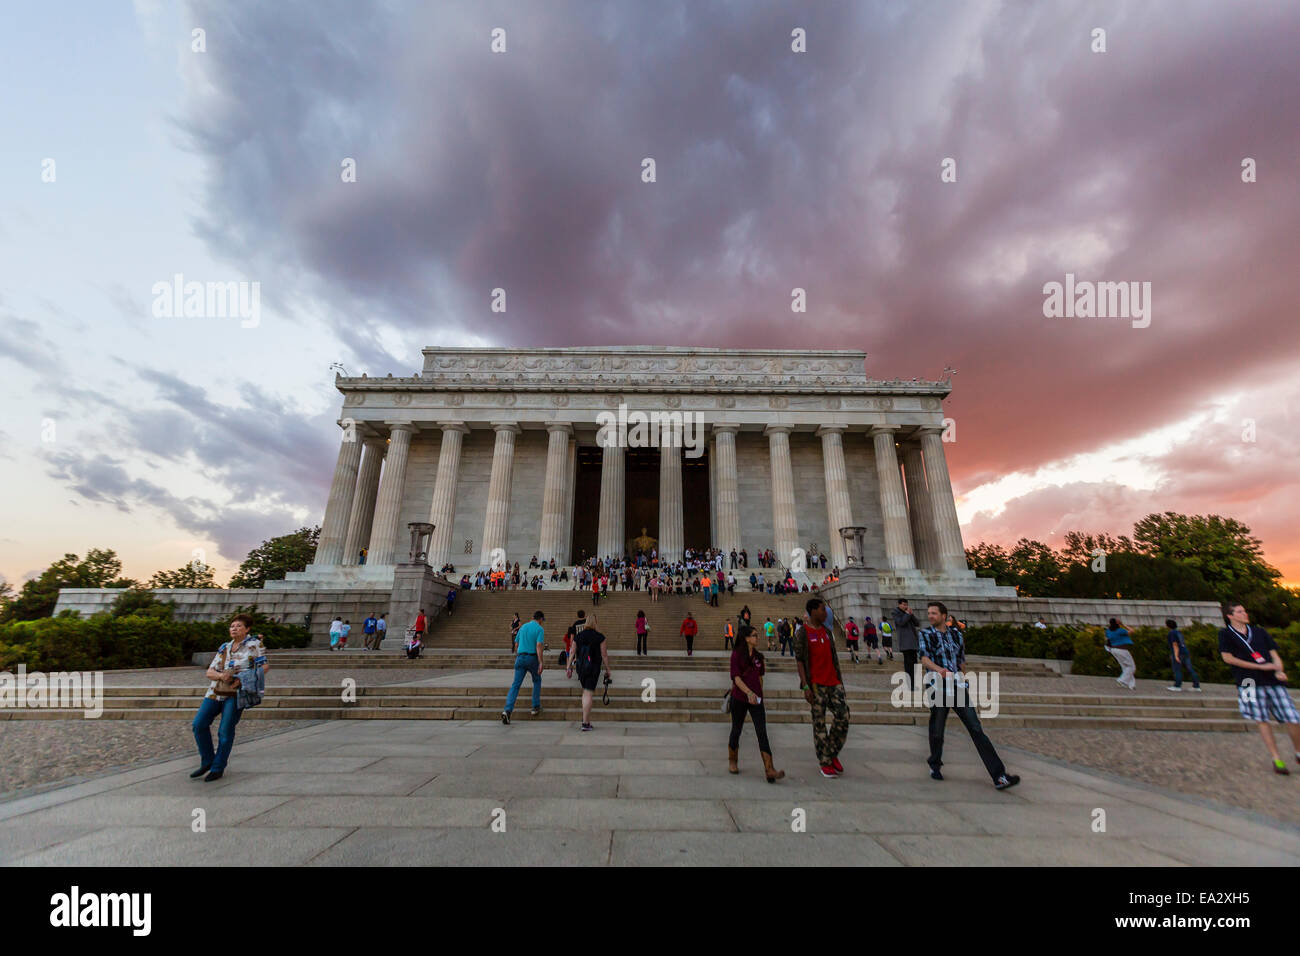 Außenansicht des Lincoln Memorial am Sonnenuntergang, Washington D.C., Vereinigte Staaten von Amerika, Nordamerika Stockfoto